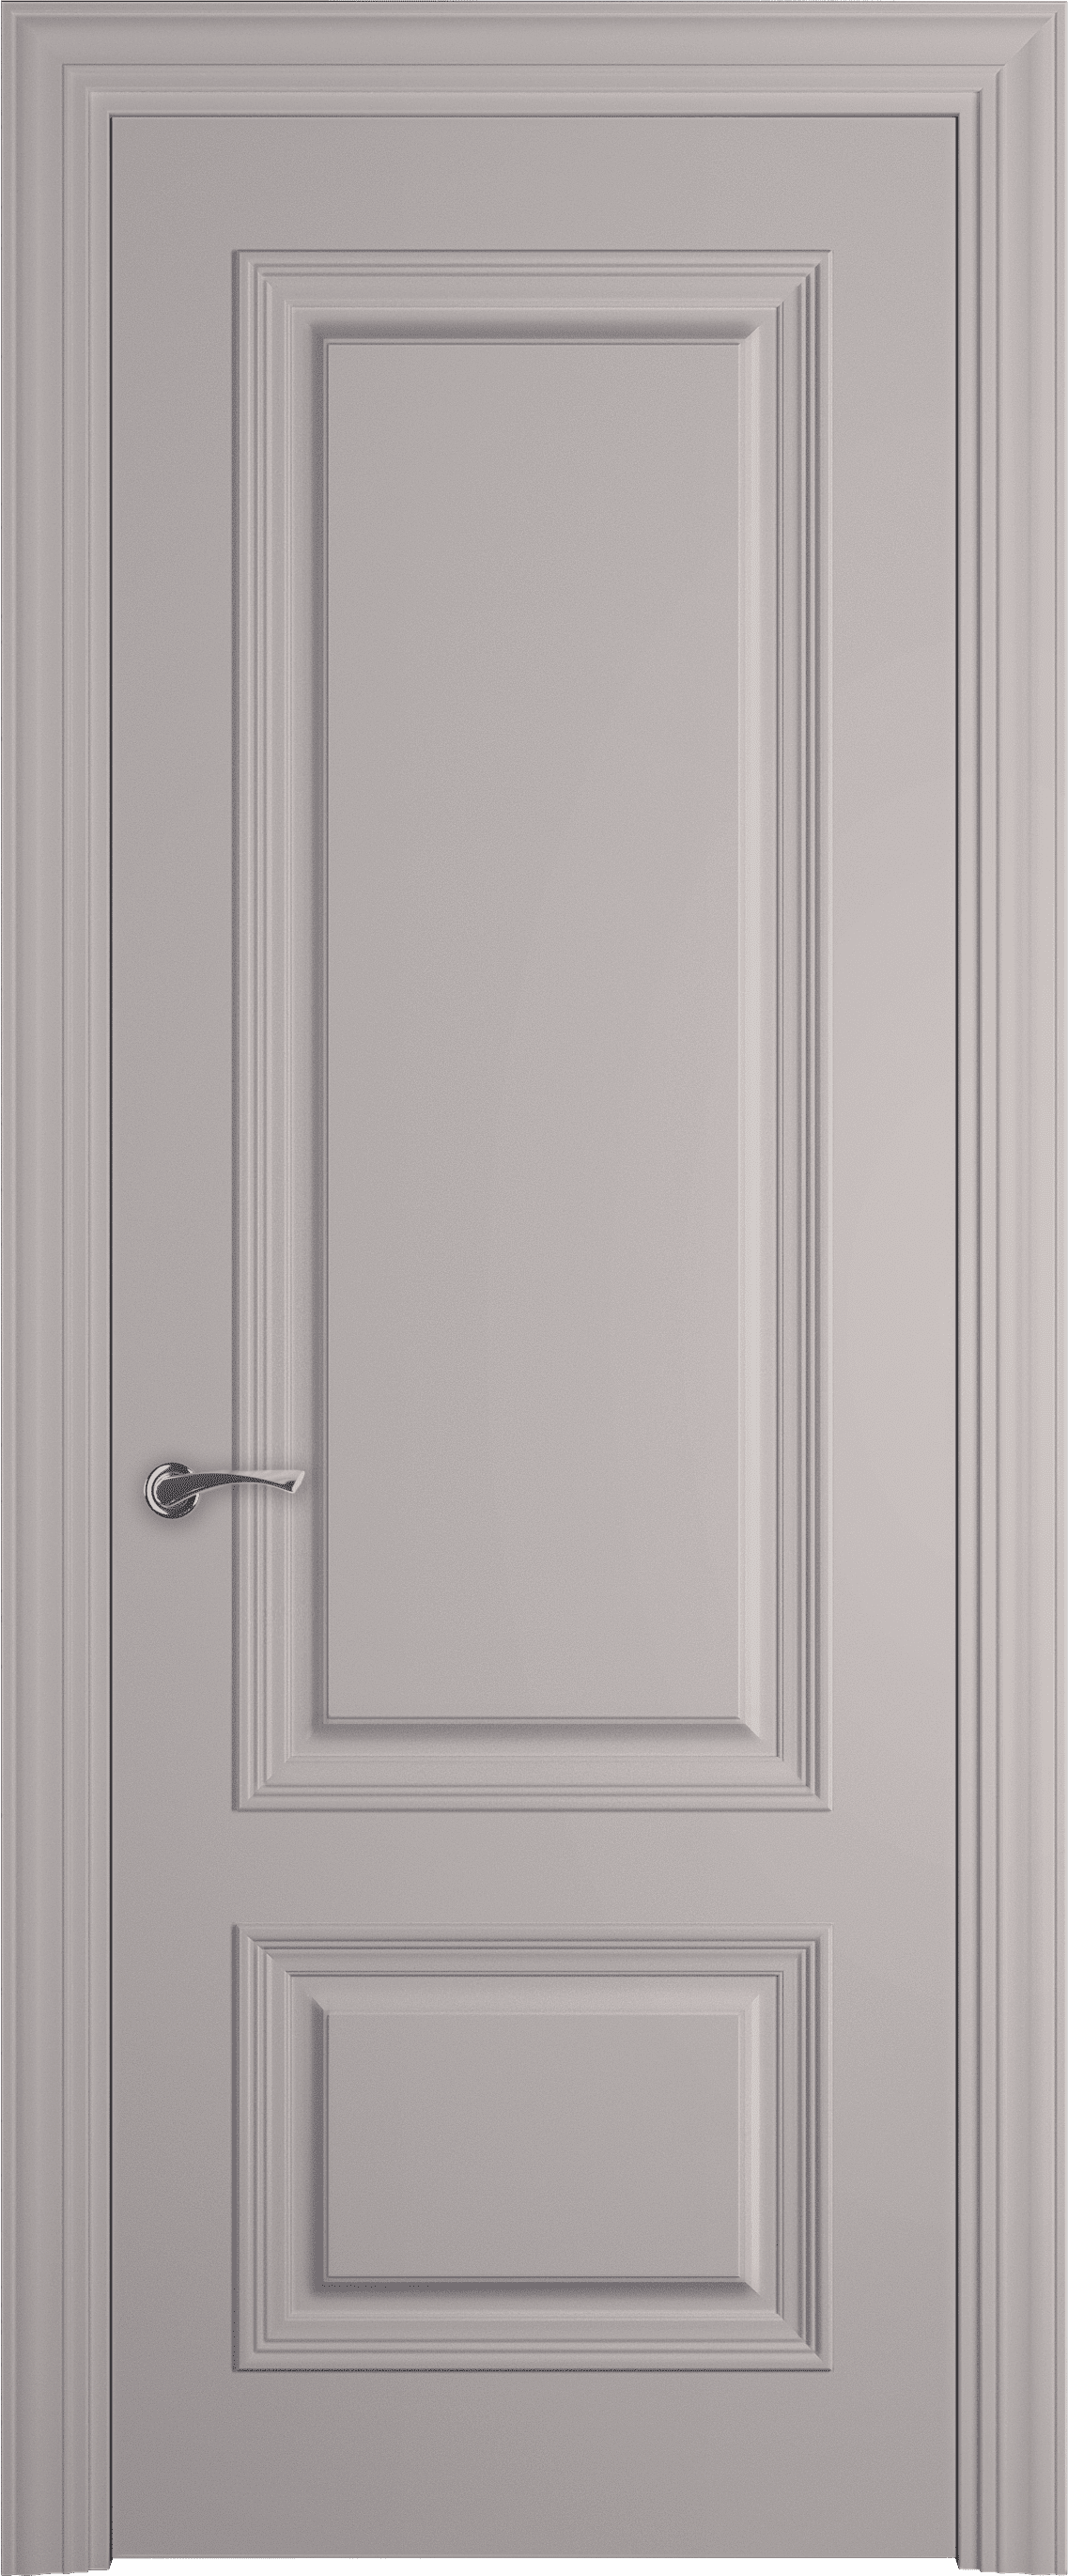 Межкомнатная дверь Лион багет 6